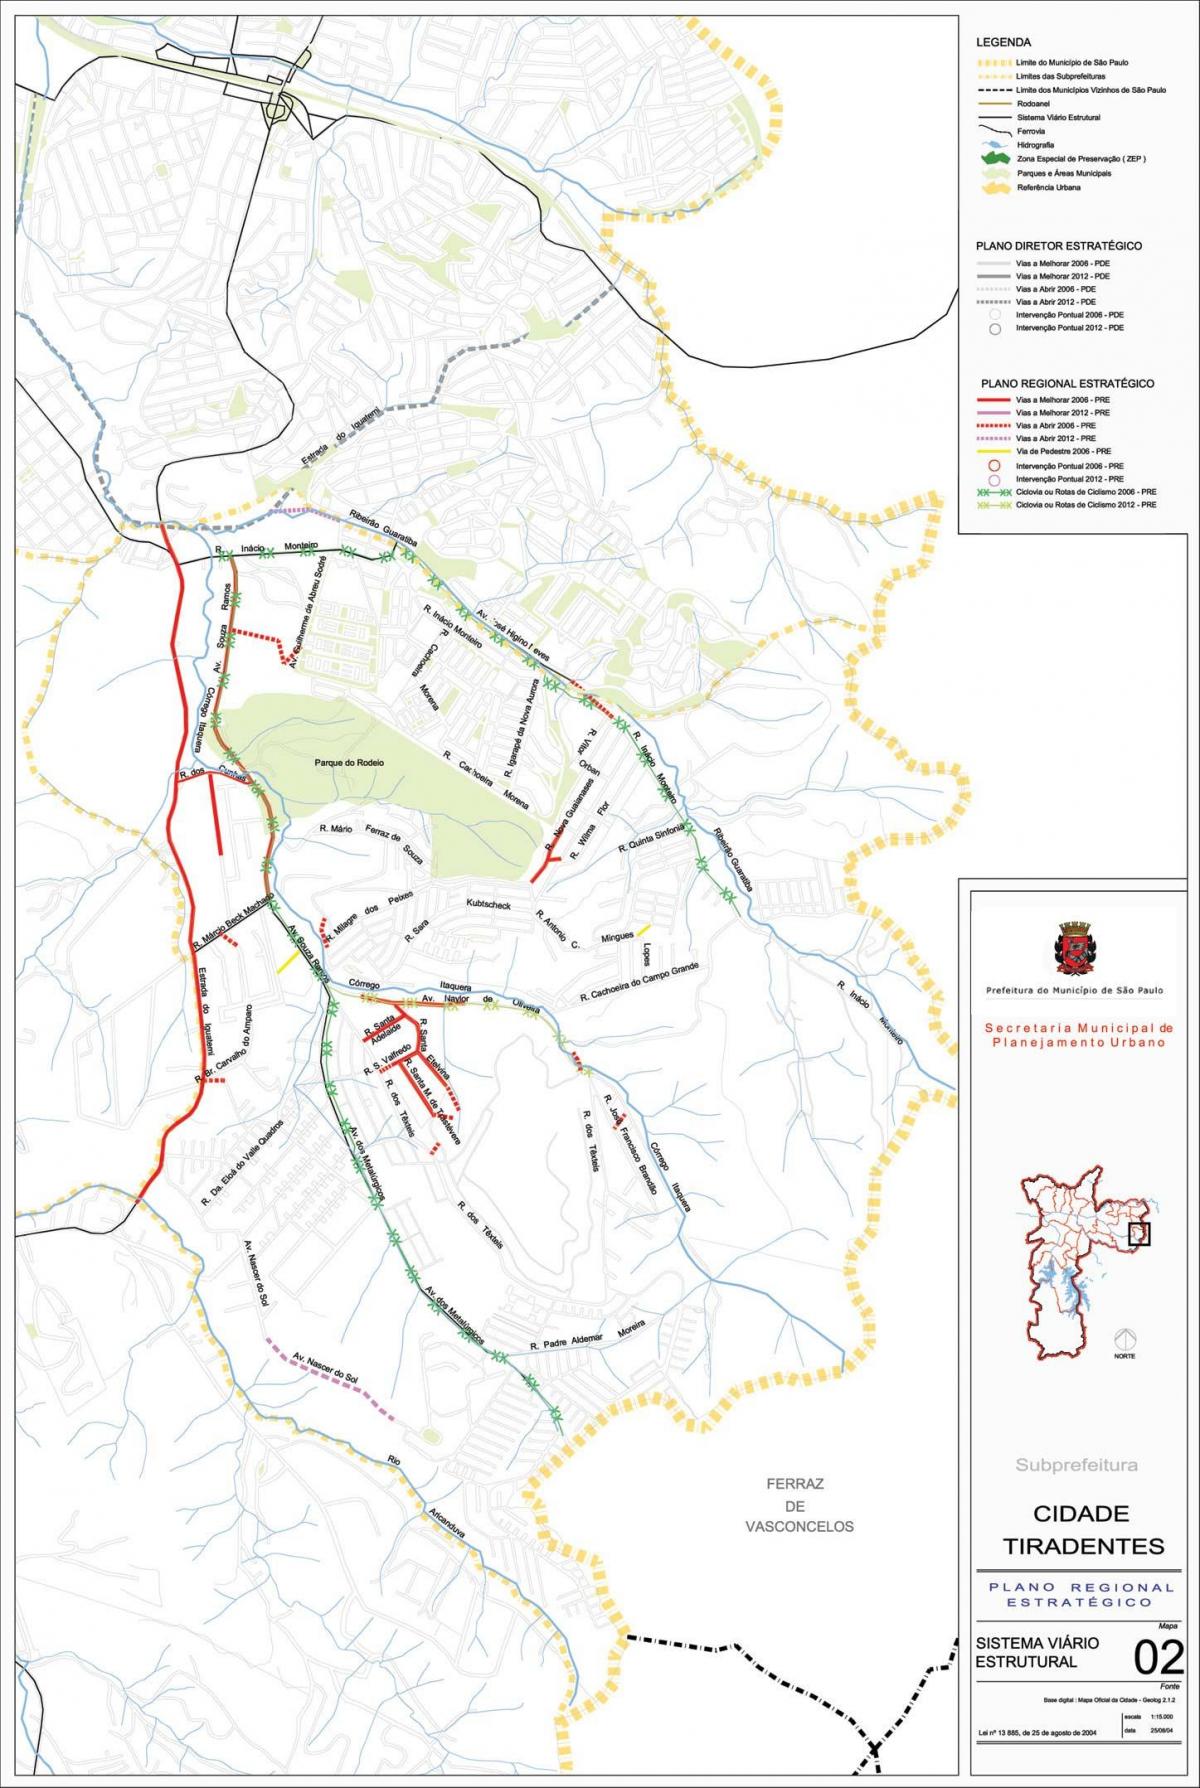 Peta Kota Tiradentes São Paulo - Jalan